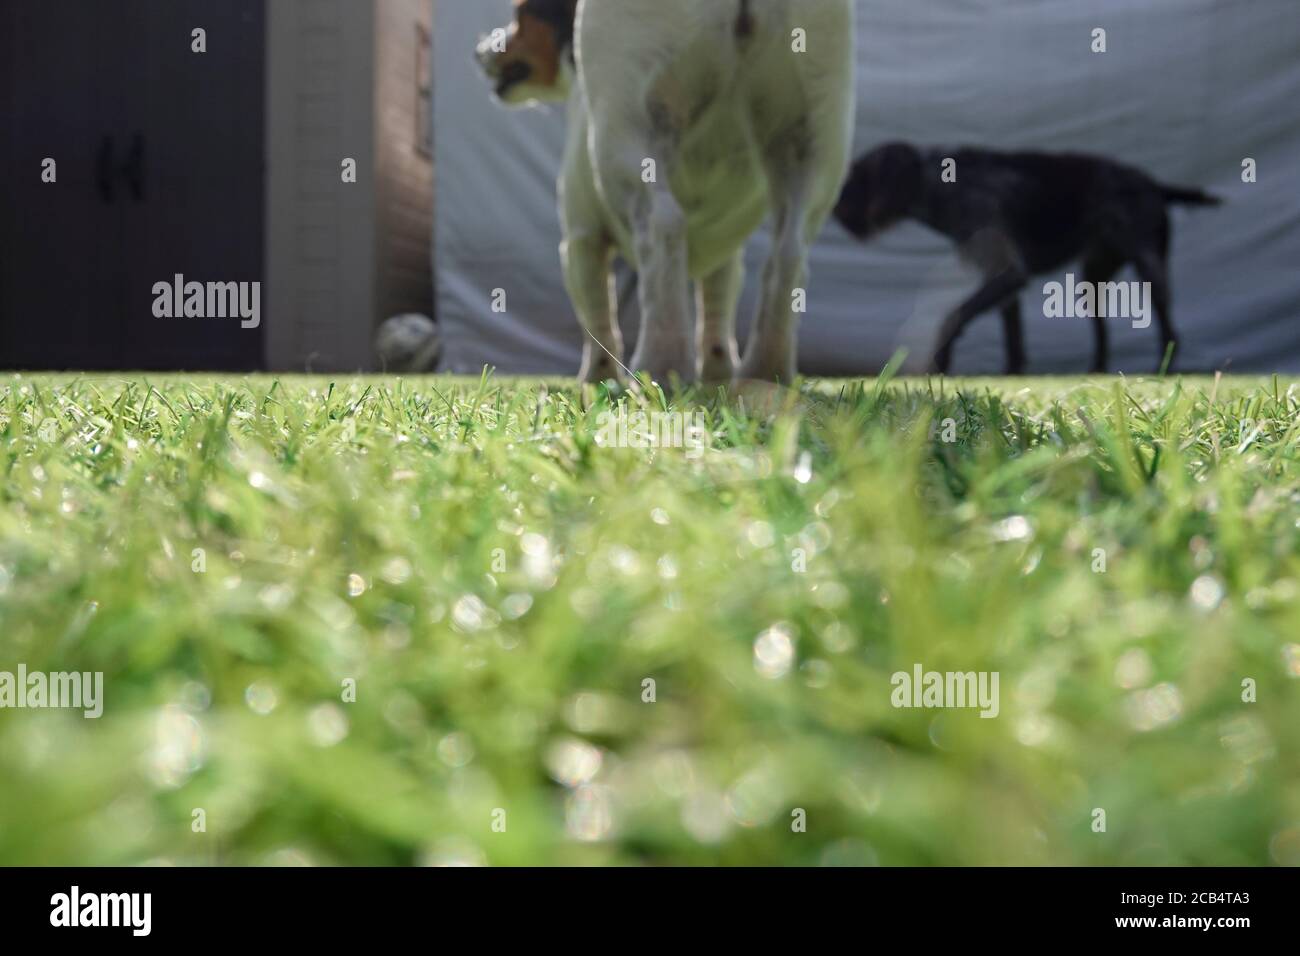 Tir de bas niveau de chiens sur pelouse artificielle Banque D'Images